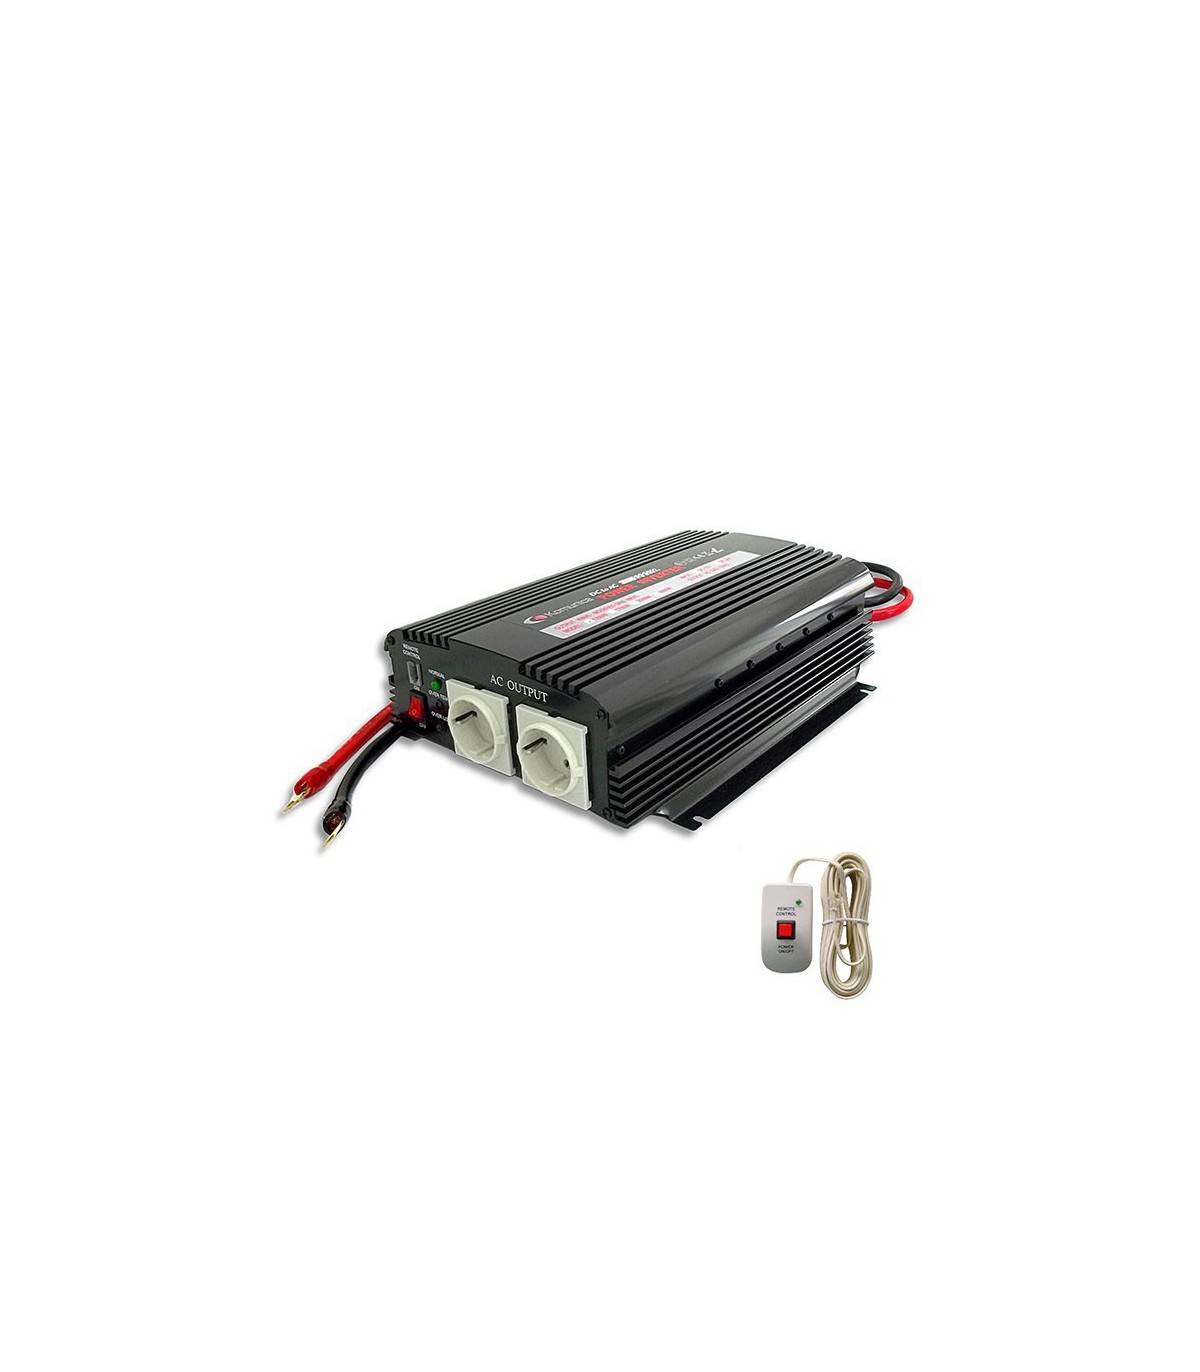 Inverter 1700W, 24V/220V + remote control